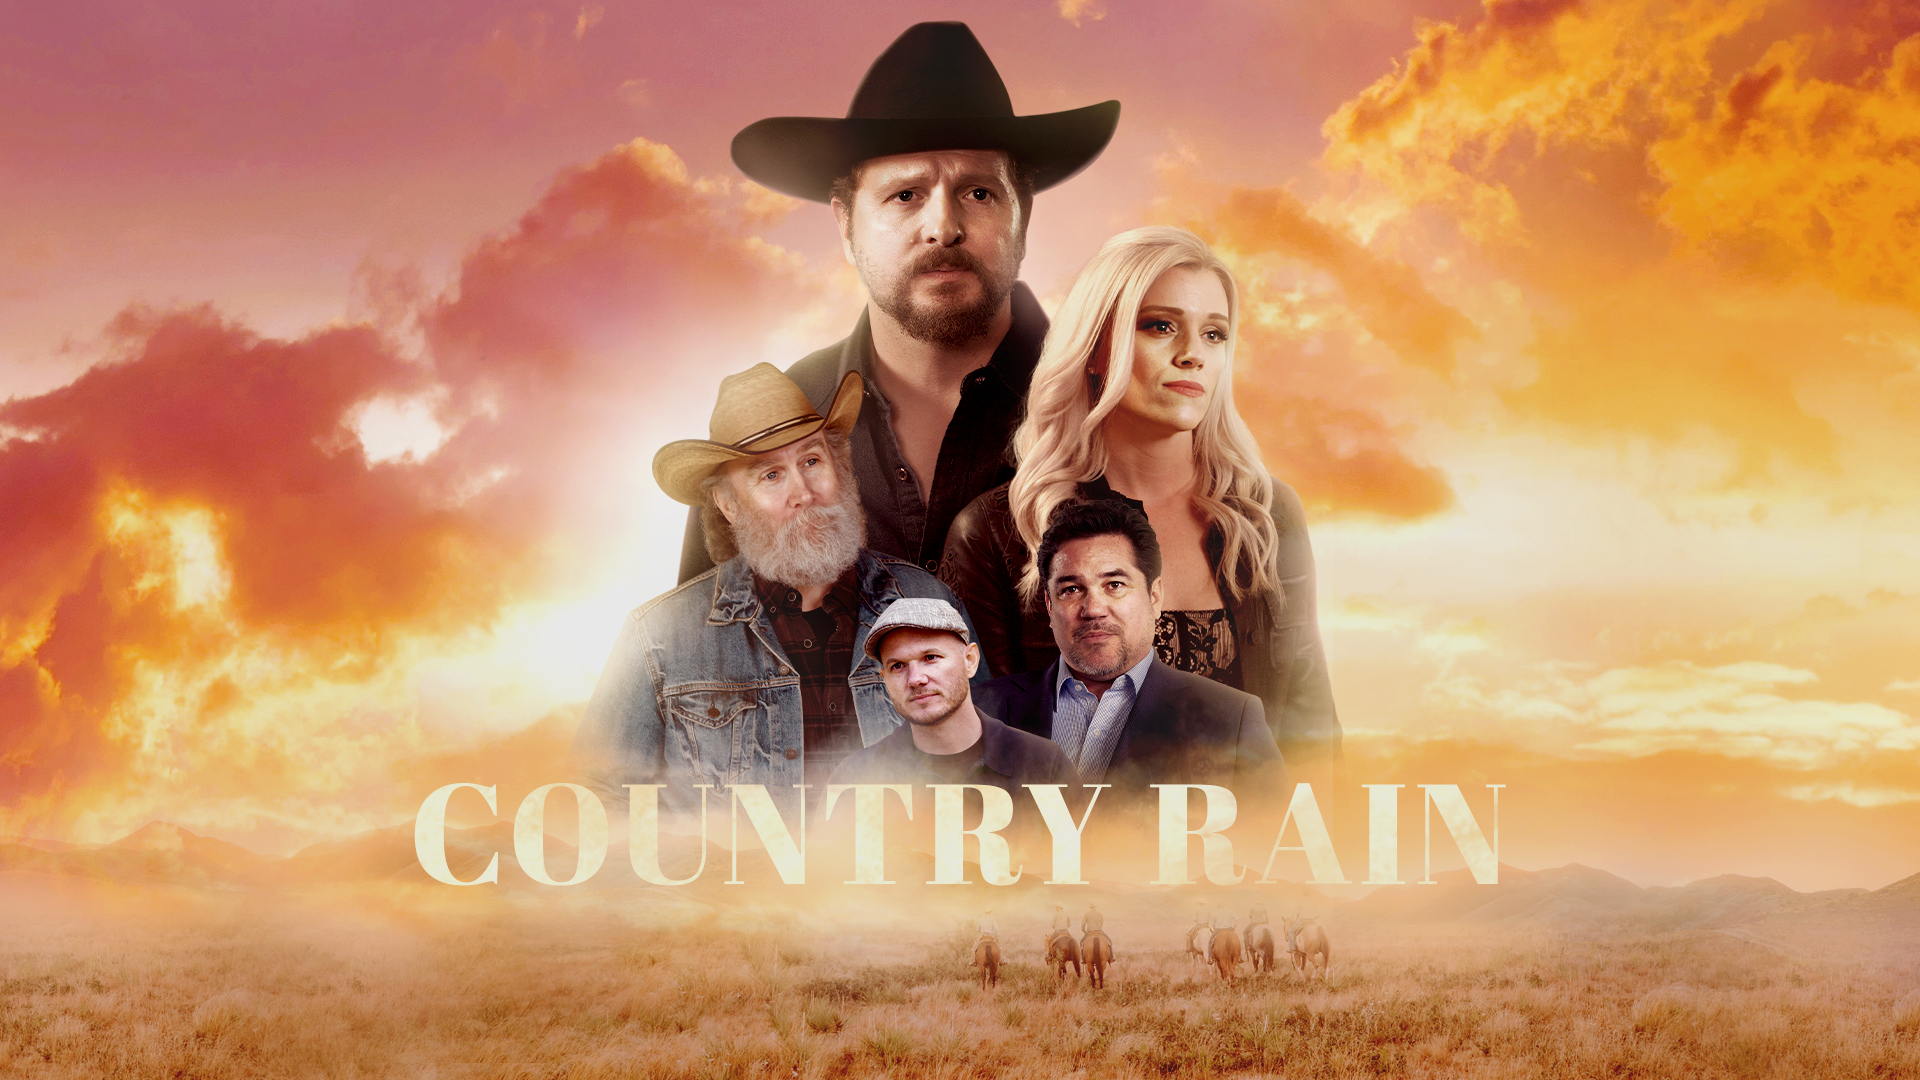 Country Rain Movie